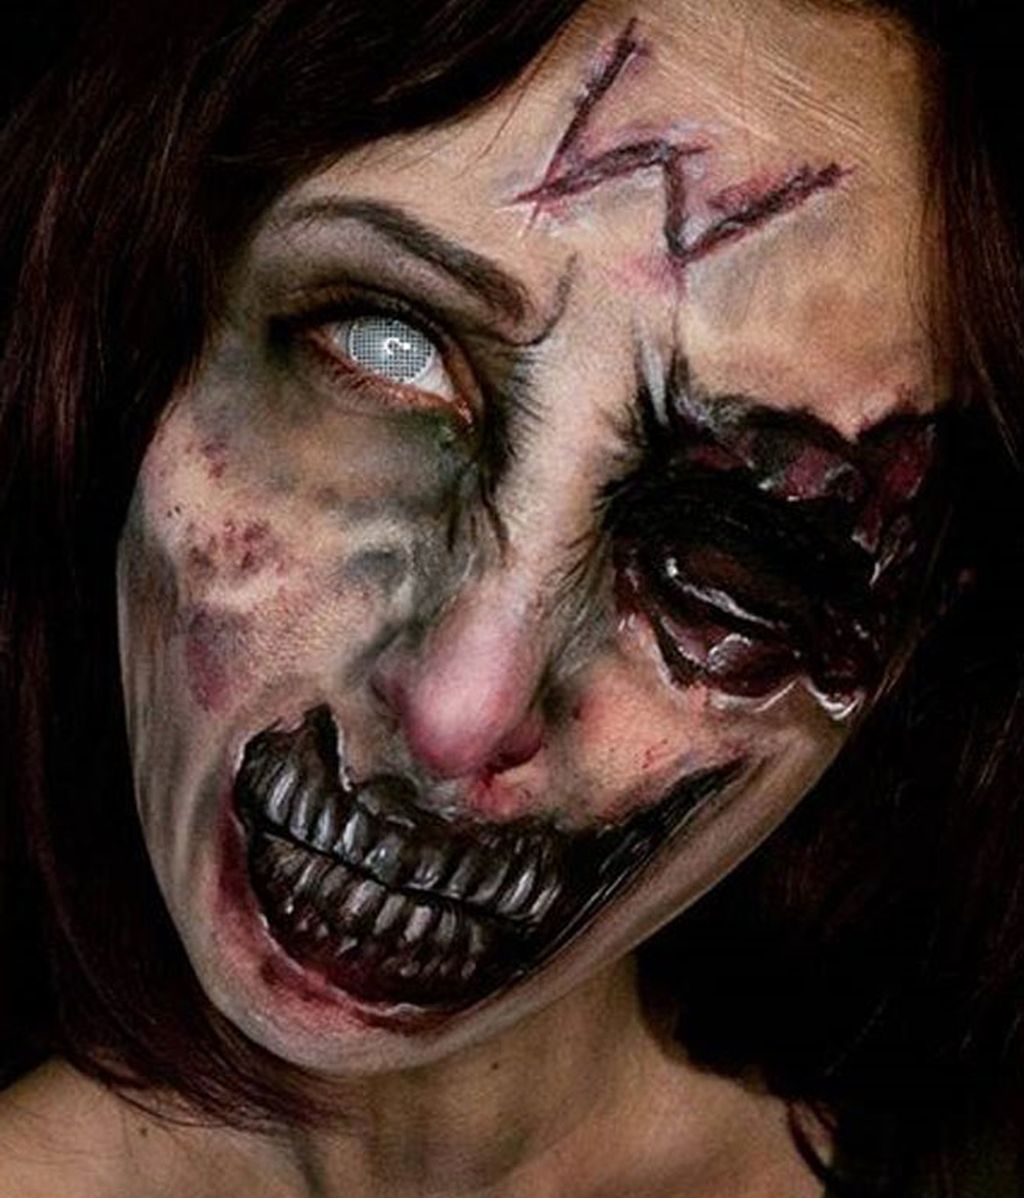 Esta maquilladora encarna a los seres más terroríficos para mostrar su arte